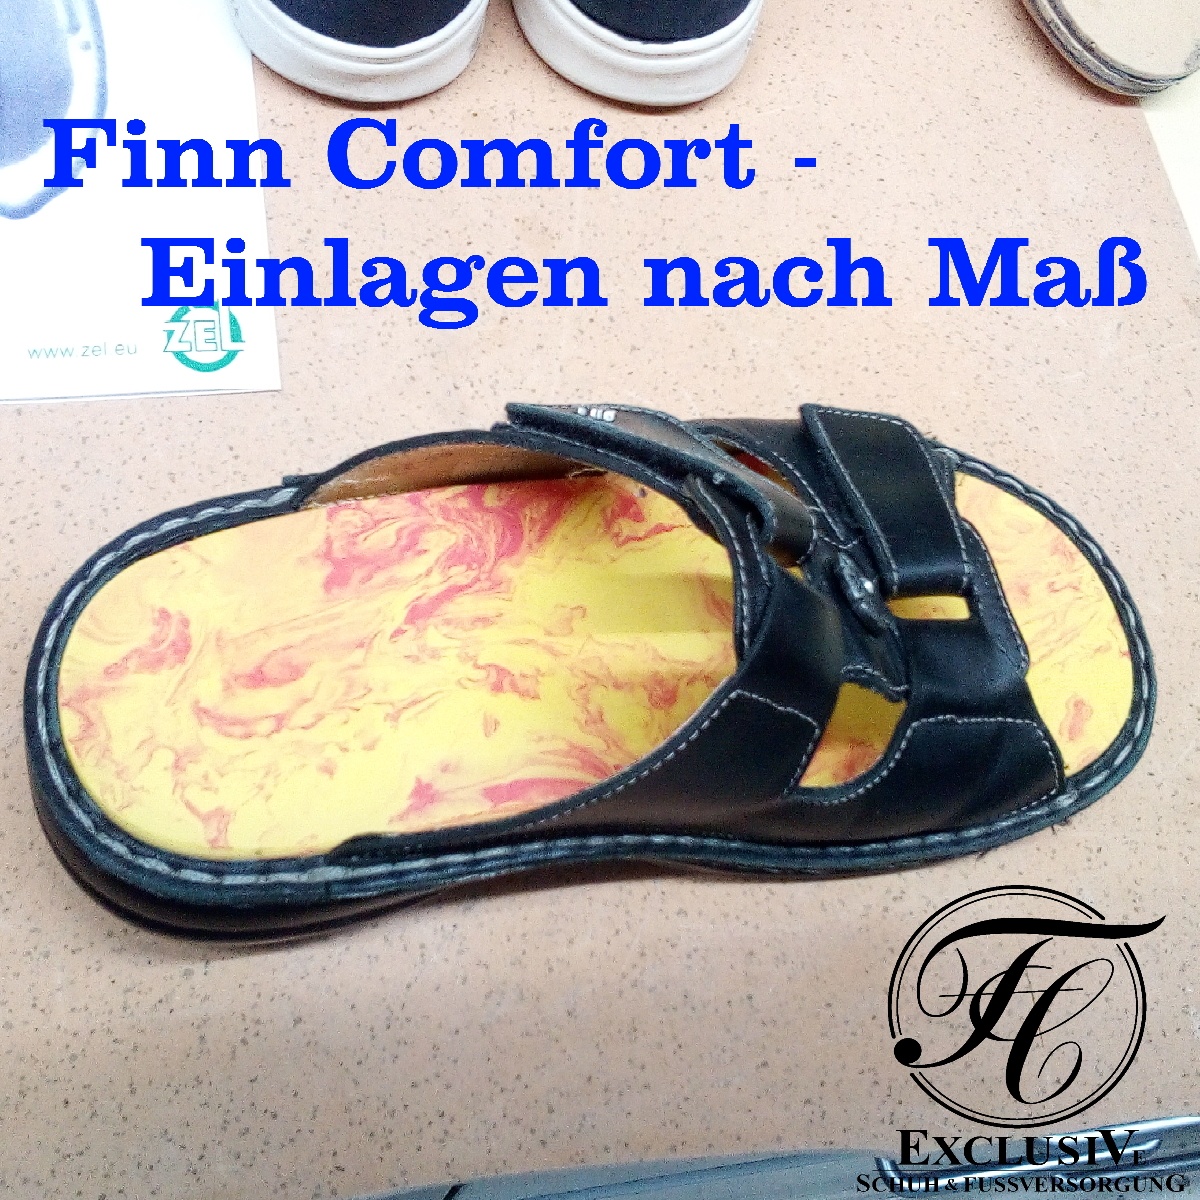 Orthopädie für ihre Füße in Finn Comfort Schuhe.